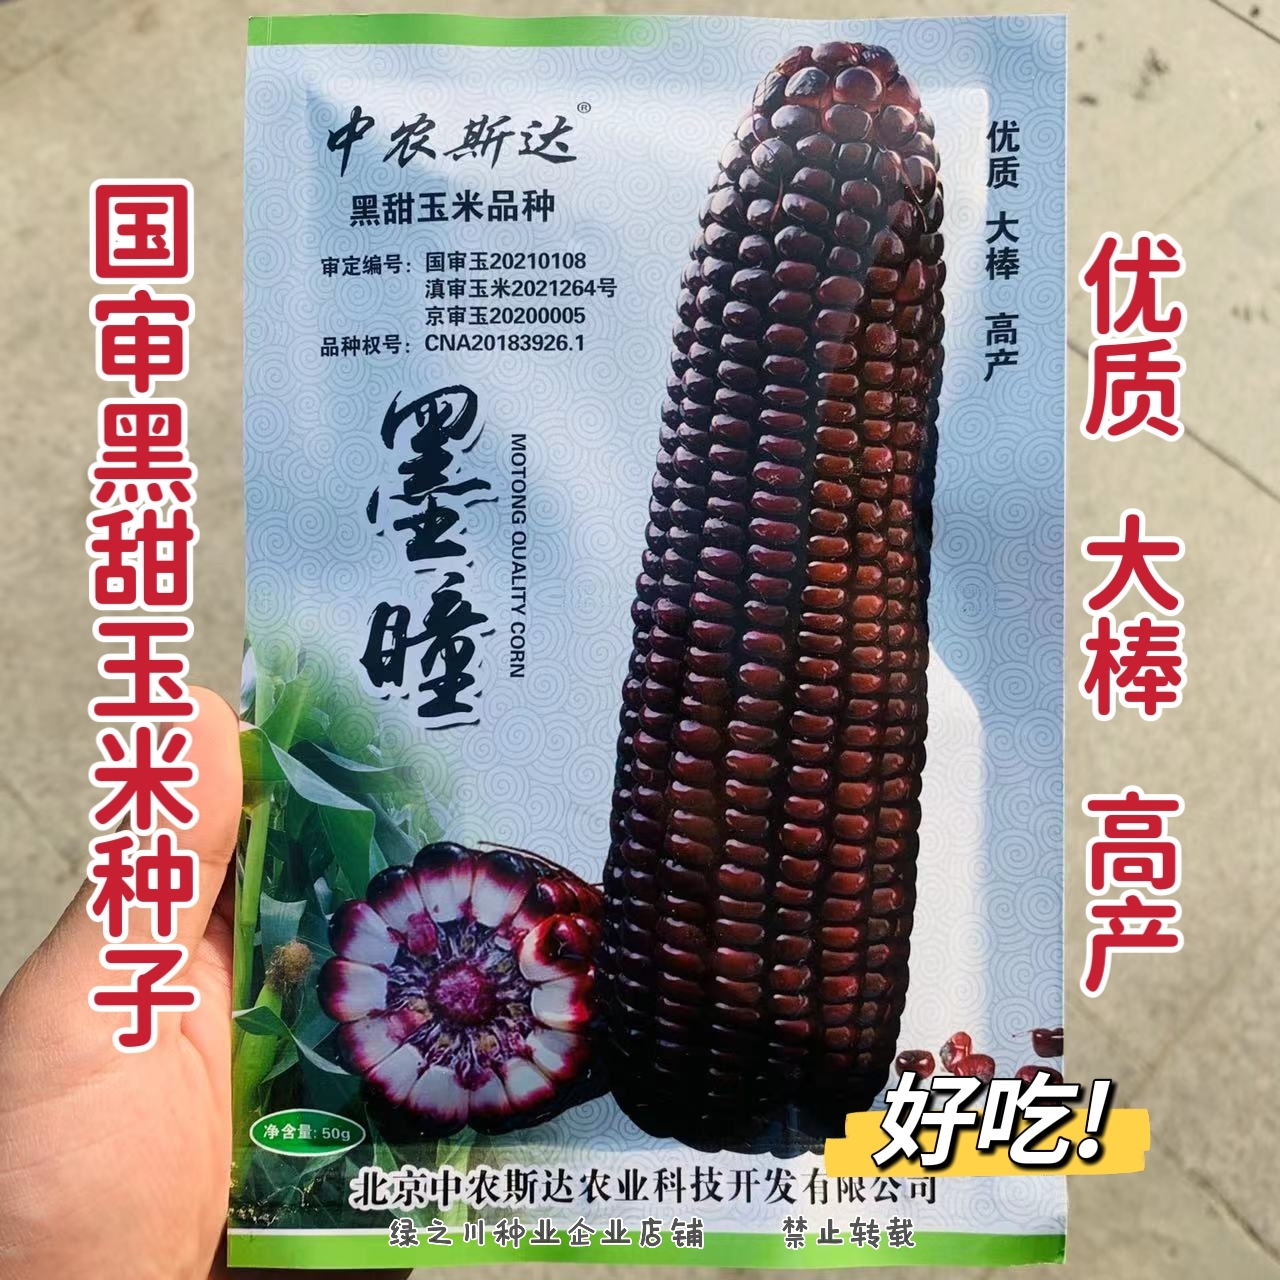 沭阳县中农斯达国审鲜食黑甜玉米种子 大棒墨瞳黑玉米种子优质南北方播